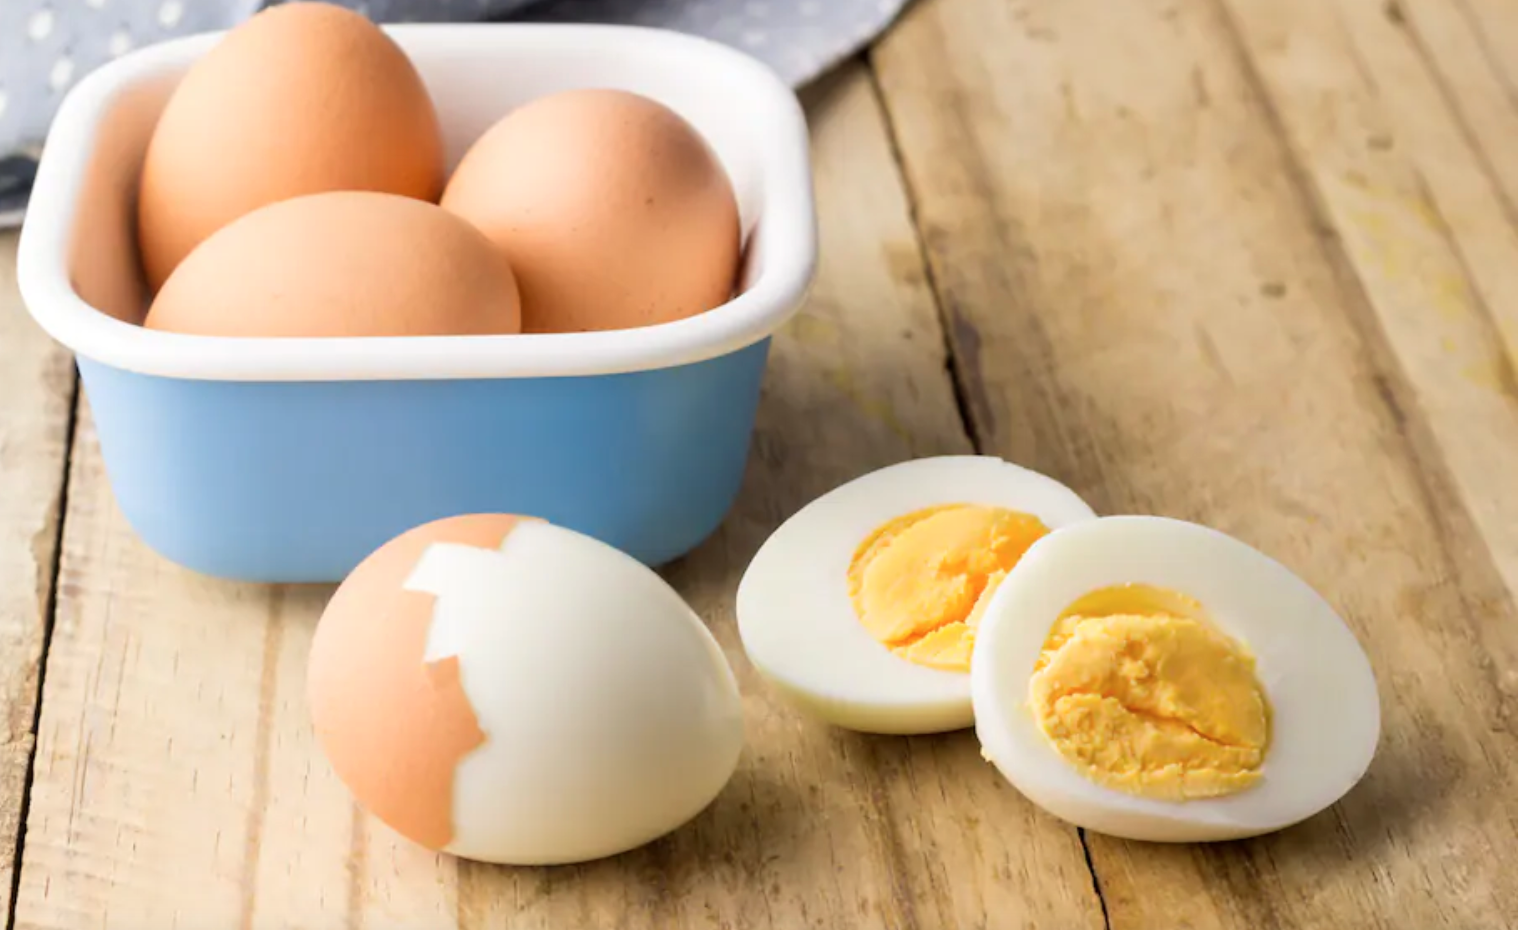 Konsumimi i vezëve mund të jetë i rrezikshem për shëndetin